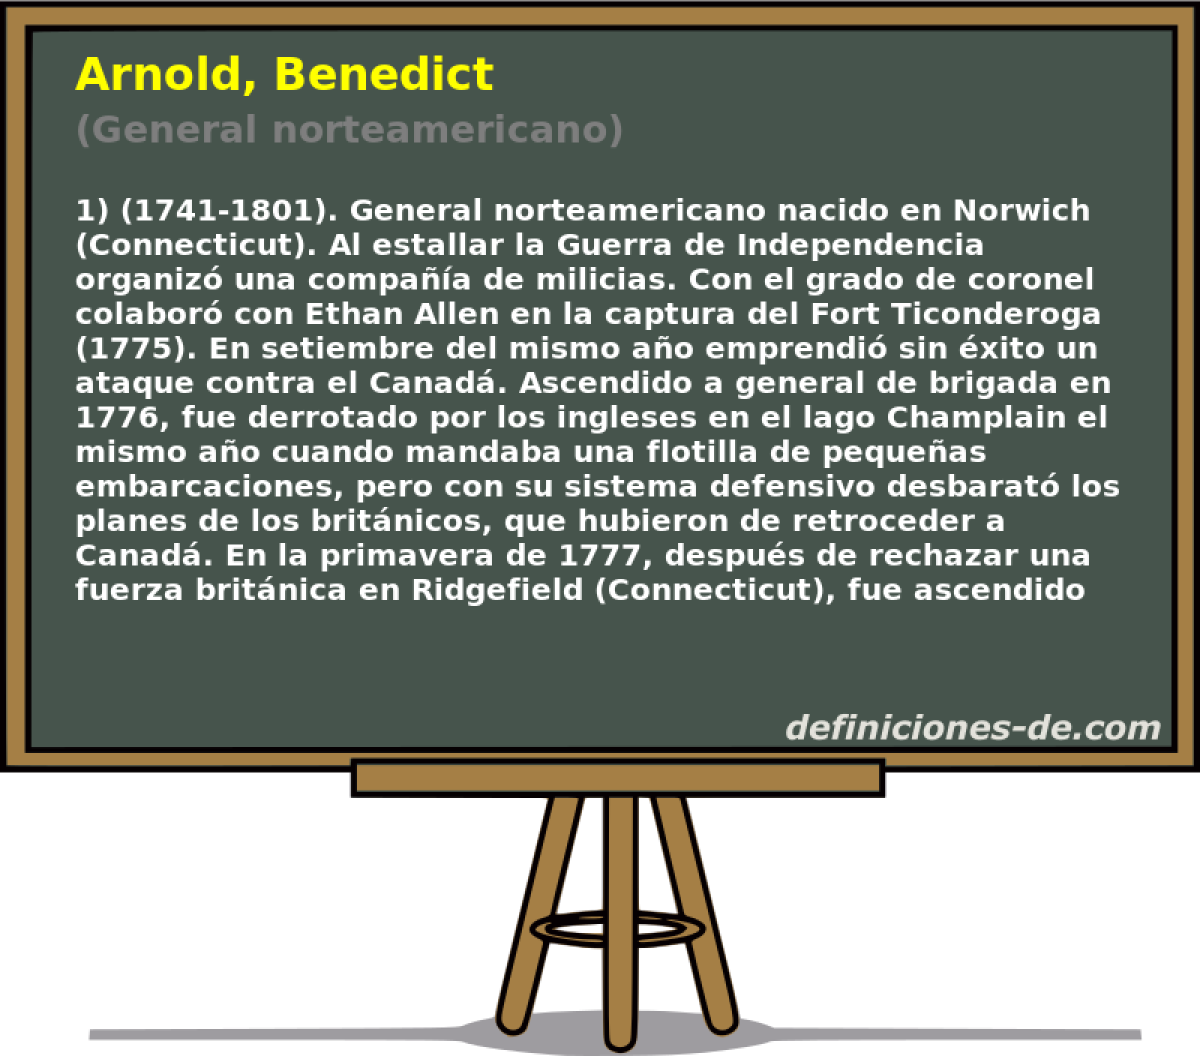 Arnold, Benedict (General norteamericano)